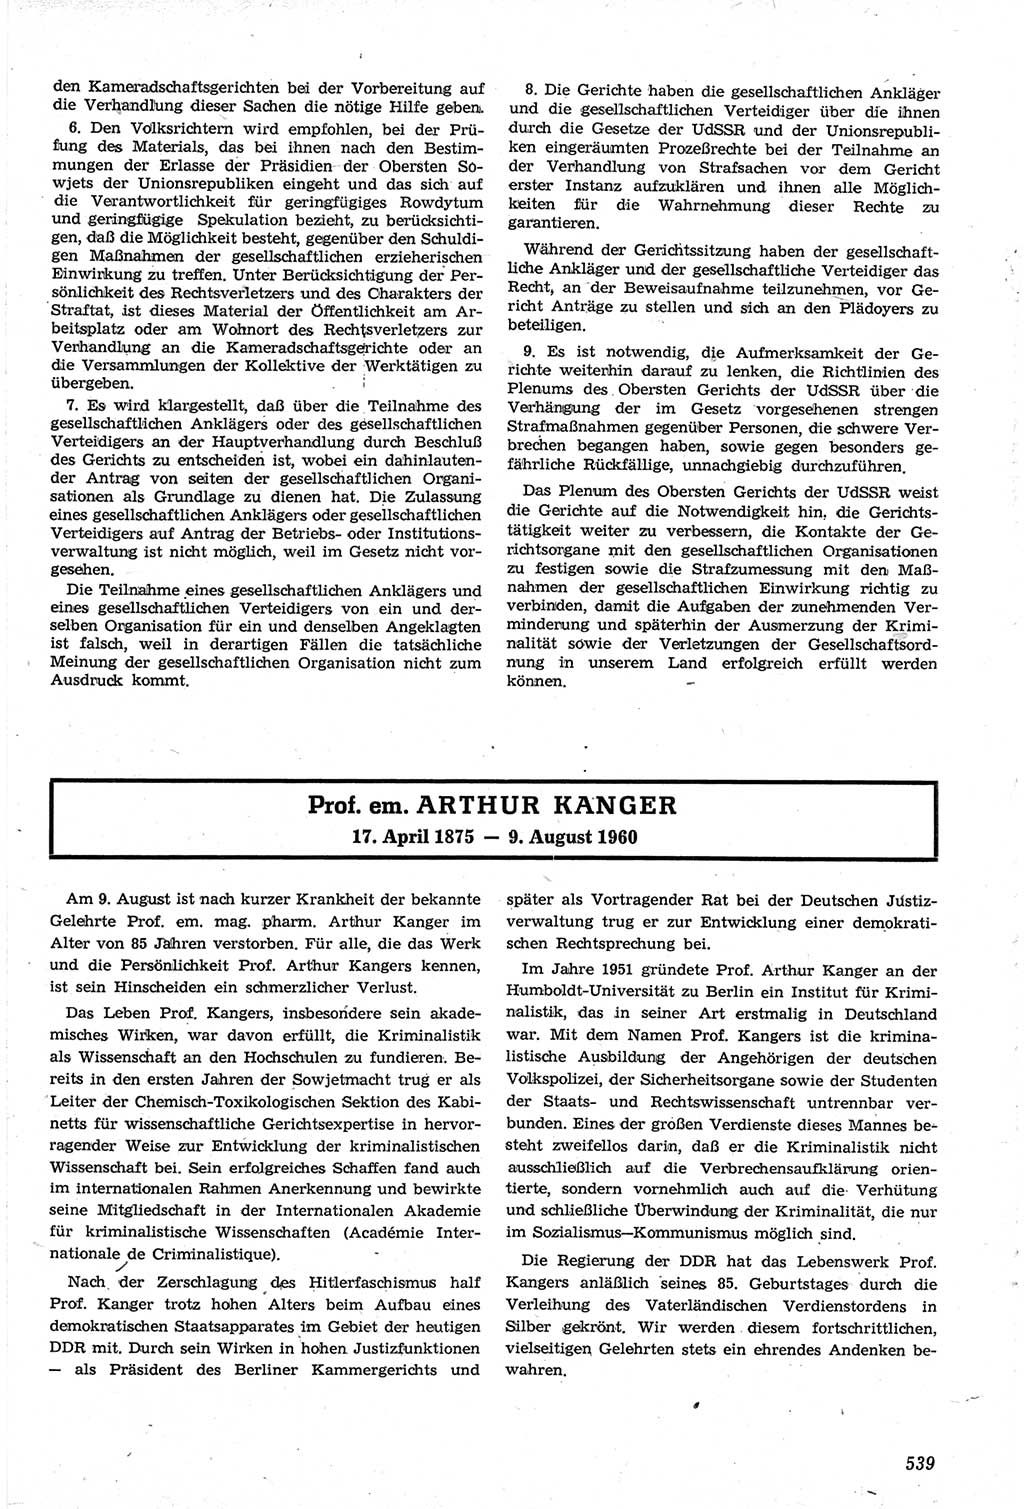 Neue Justiz (NJ), Zeitschrift für Recht und Rechtswissenschaft [Deutsche Demokratische Republik (DDR)], 14. Jahrgang 1960, Seite 539 (NJ DDR 1960, S. 539)